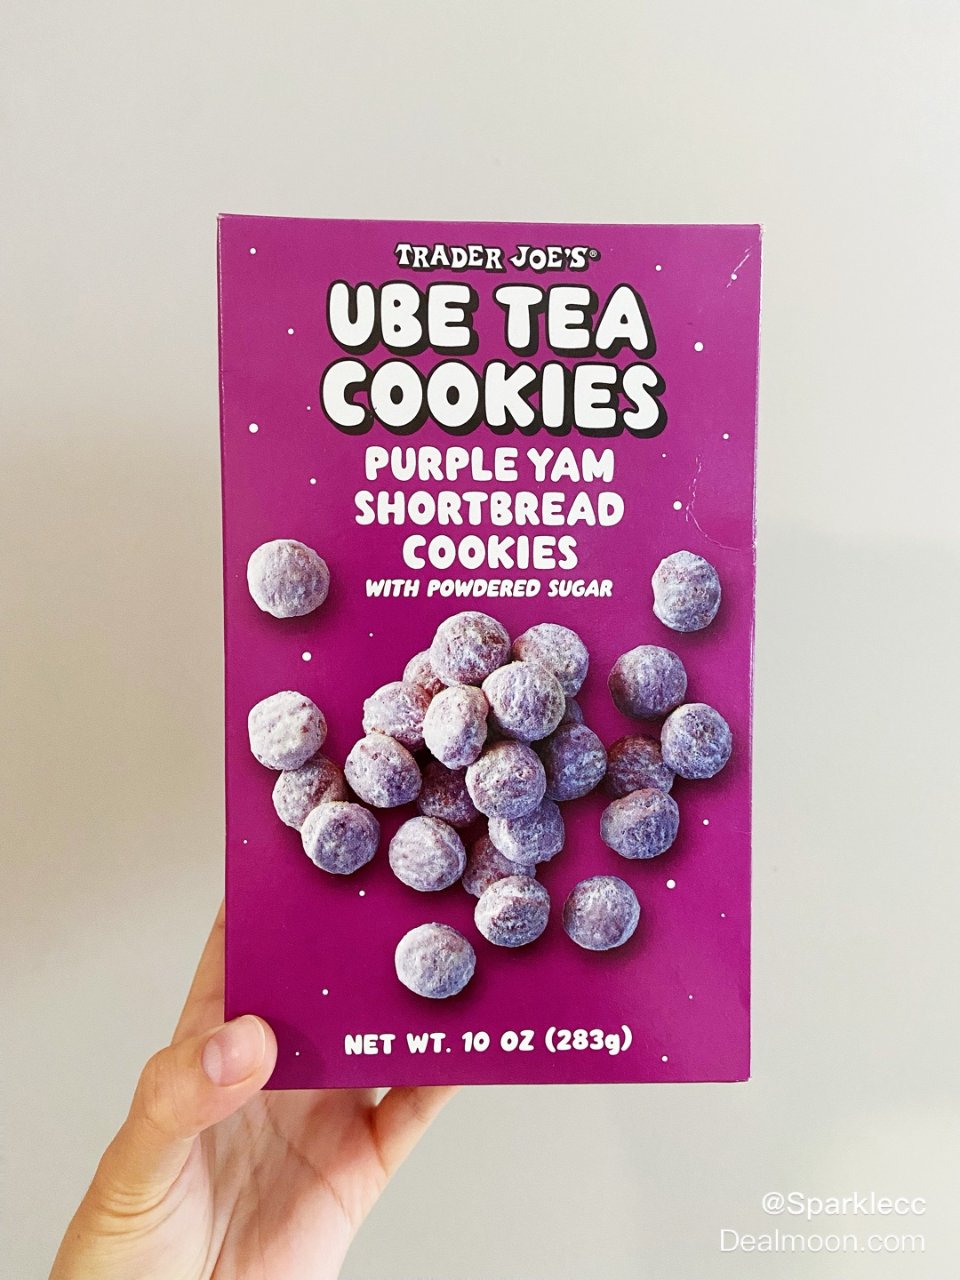 缺德舅这款UBE紫薯饼干齁甜 避雷⚡...